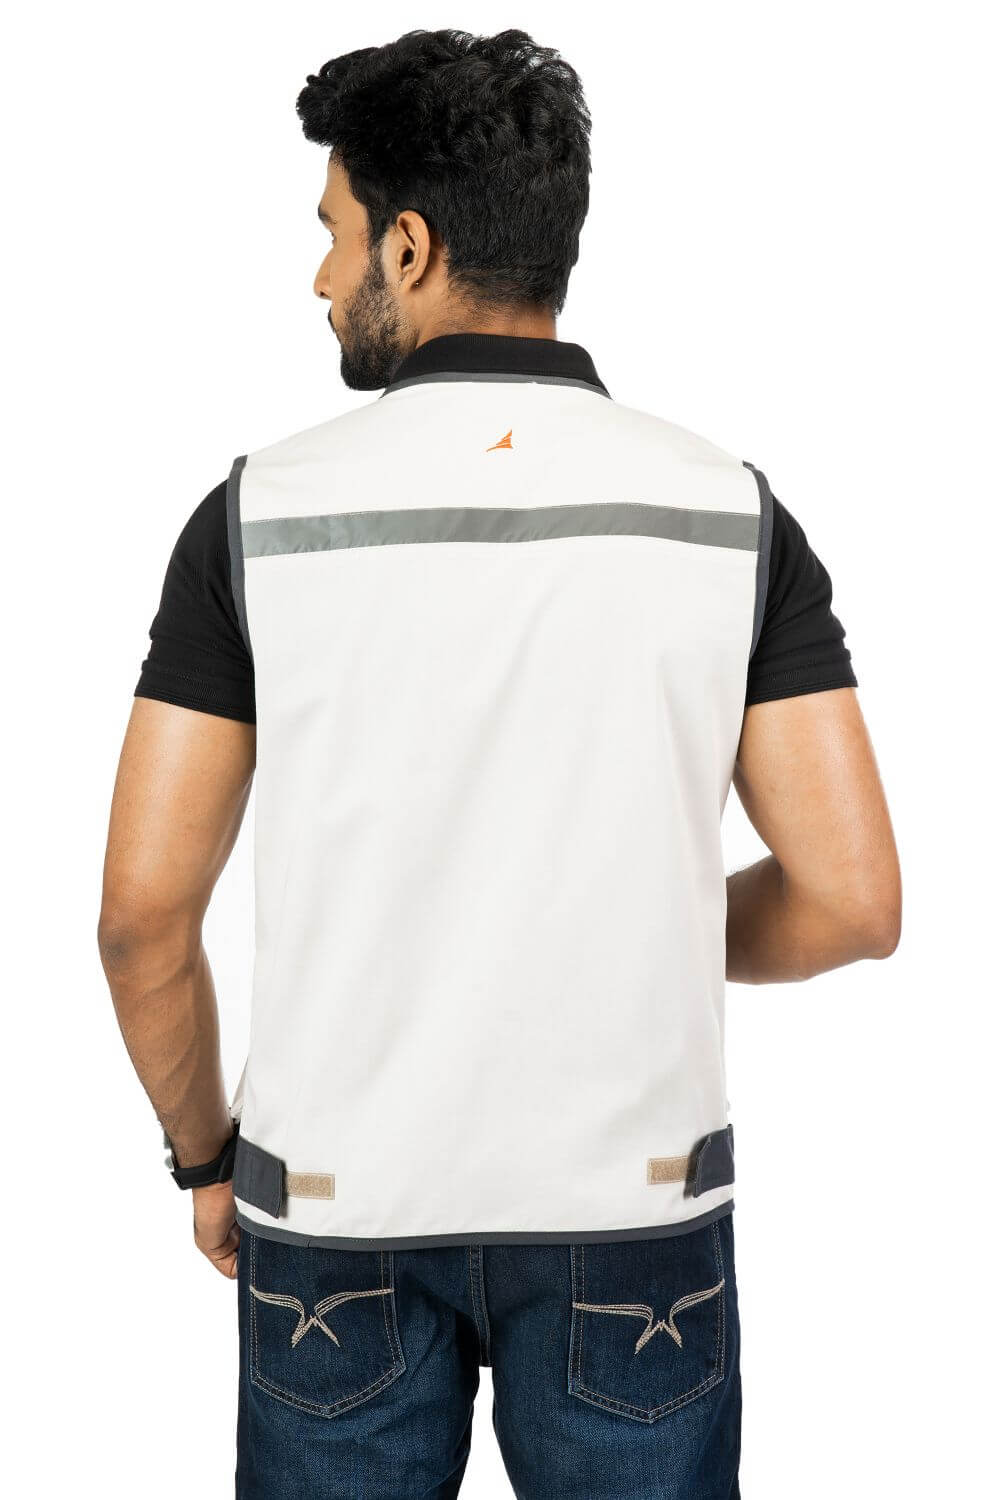 Ergonomically Designed Multi-utility Beige Adventure Vest